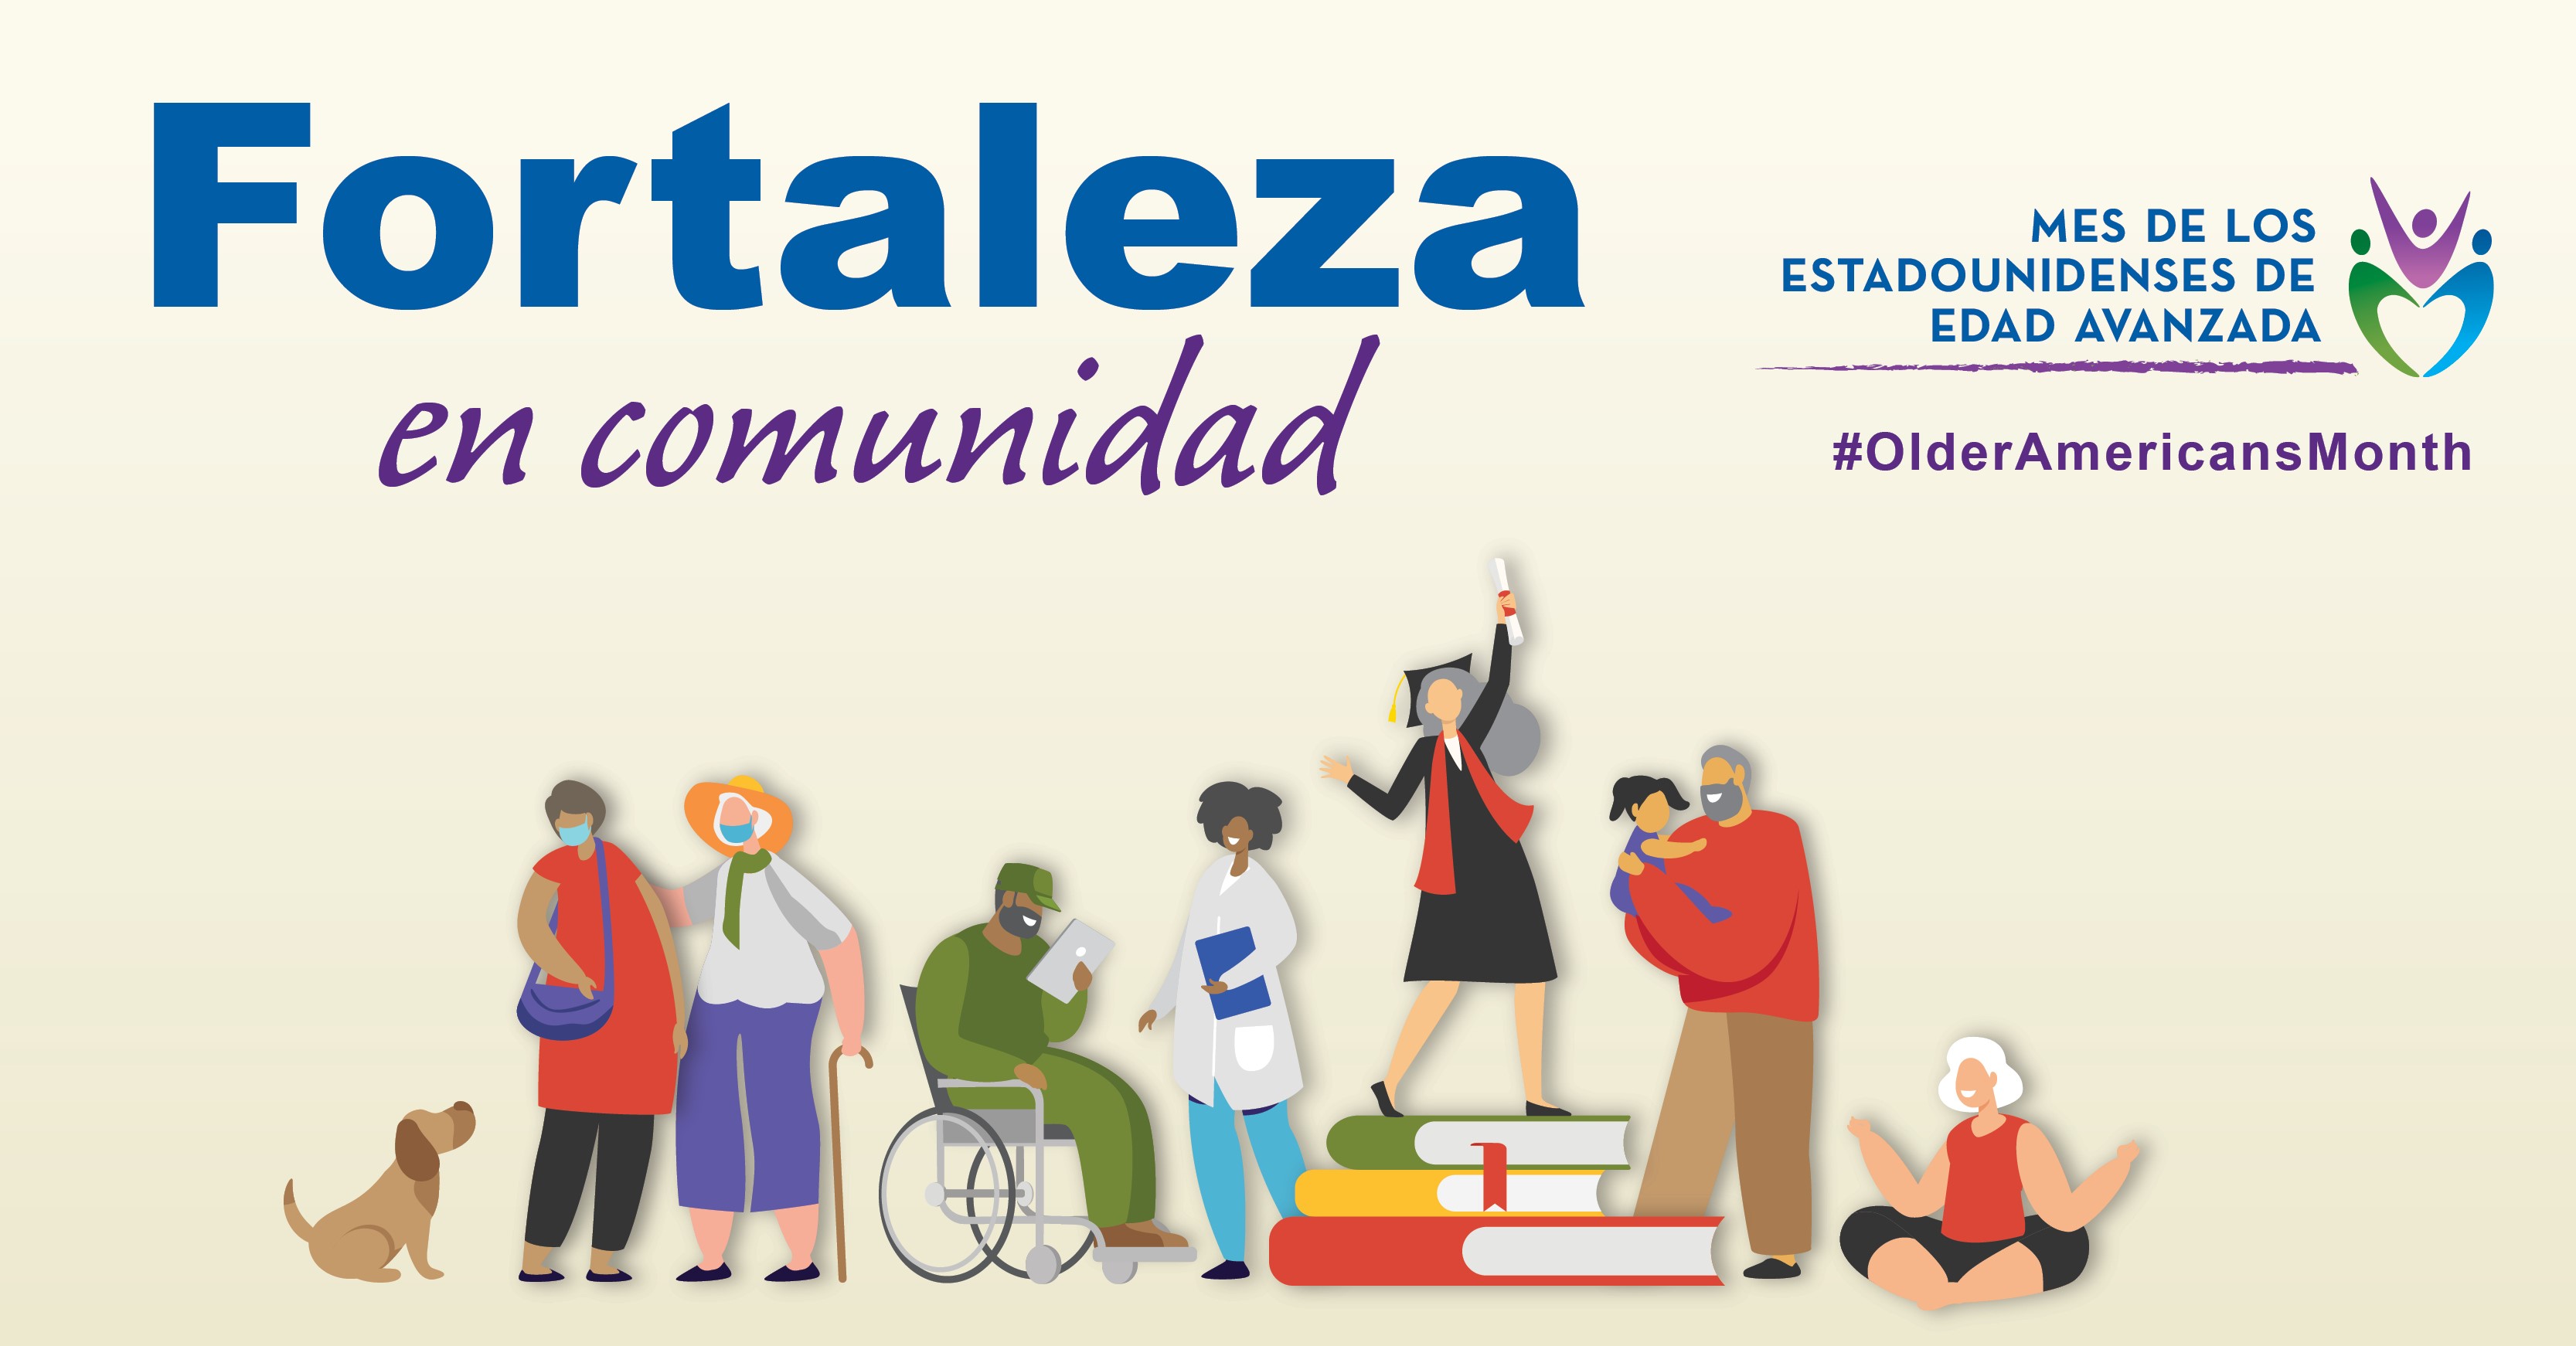 Spanish Graphic: Fortaleza en comunidad, Mes de los Estadounidenses de edad avanzada